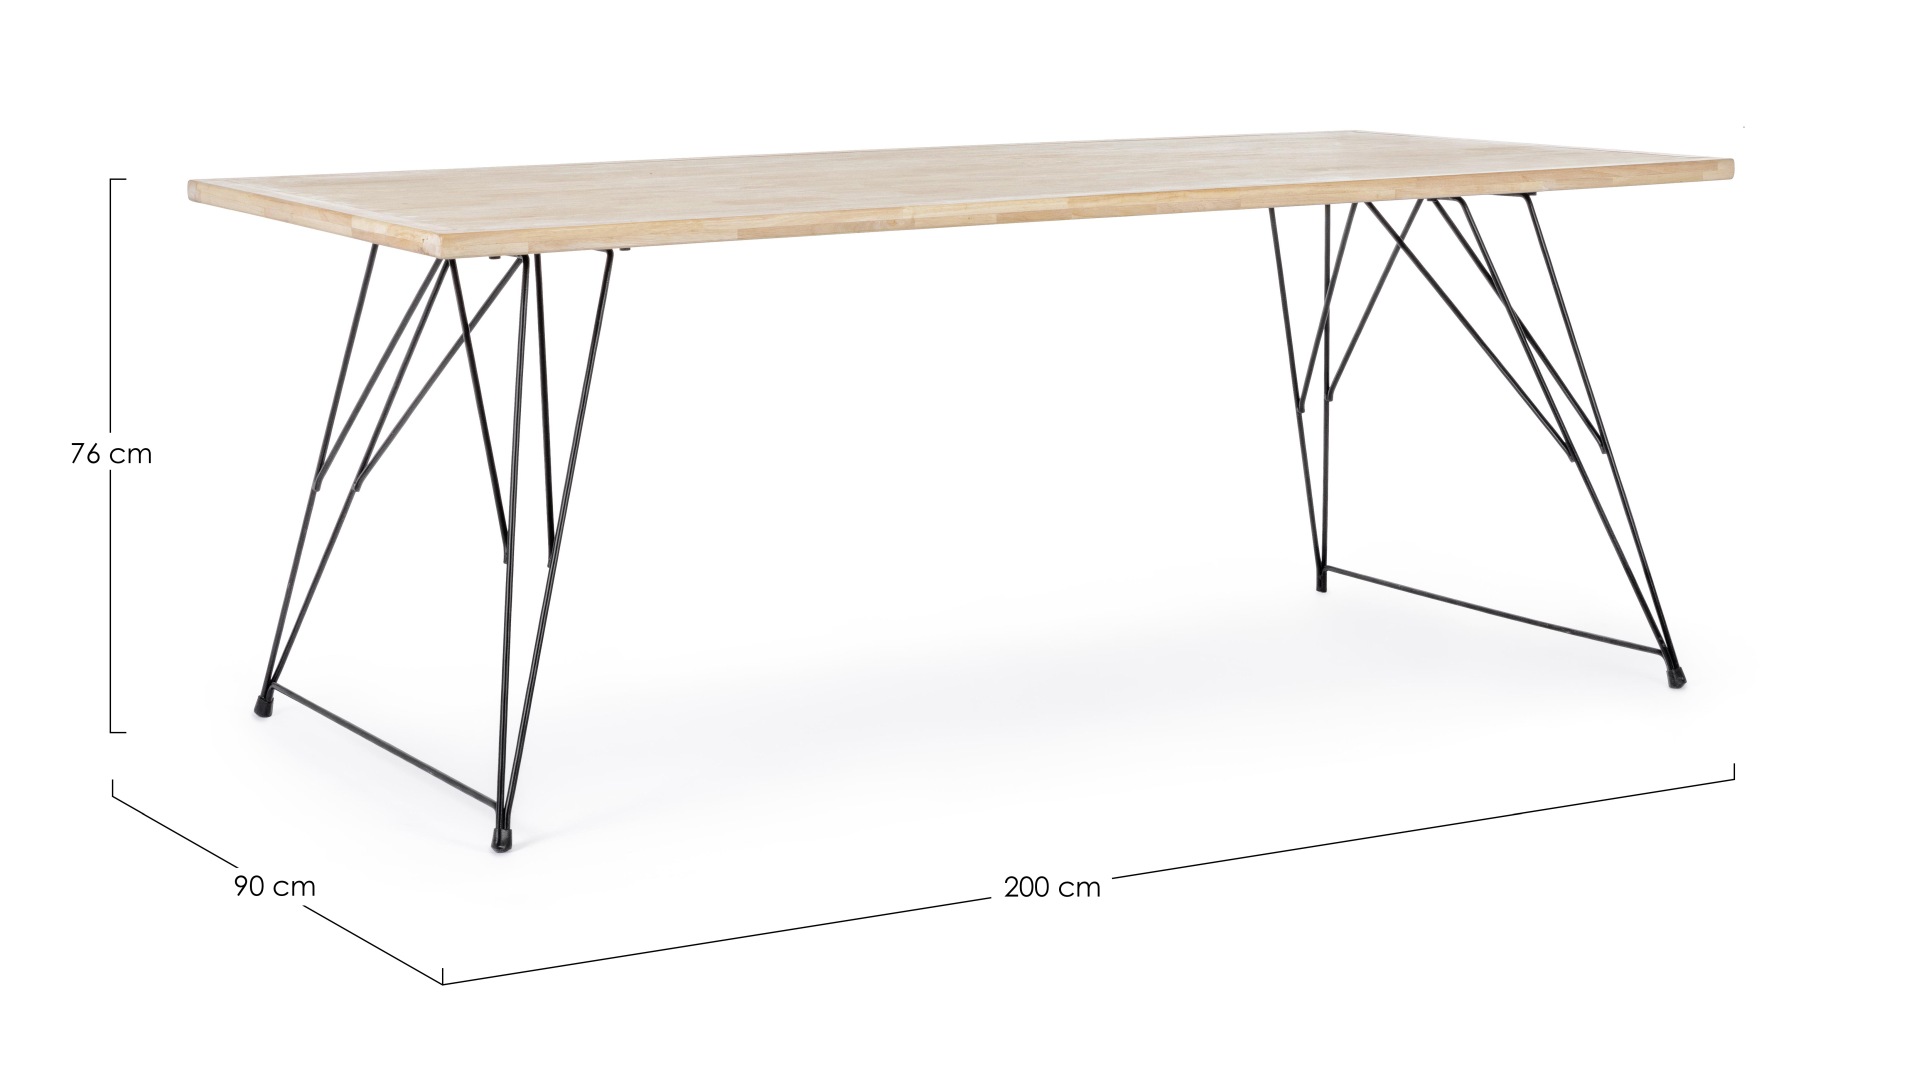 Der Esstisch District überzeugt mit seinem moderndem Design. Gefertigt wurde er aus Kautschukholz, welches einen natürlichen Farbton besitzt. Das Gestell des Tisches ist aus Metall und ist in eine schwarze Farbe. Der Tisch besitzt eine Breite von 200 cm.